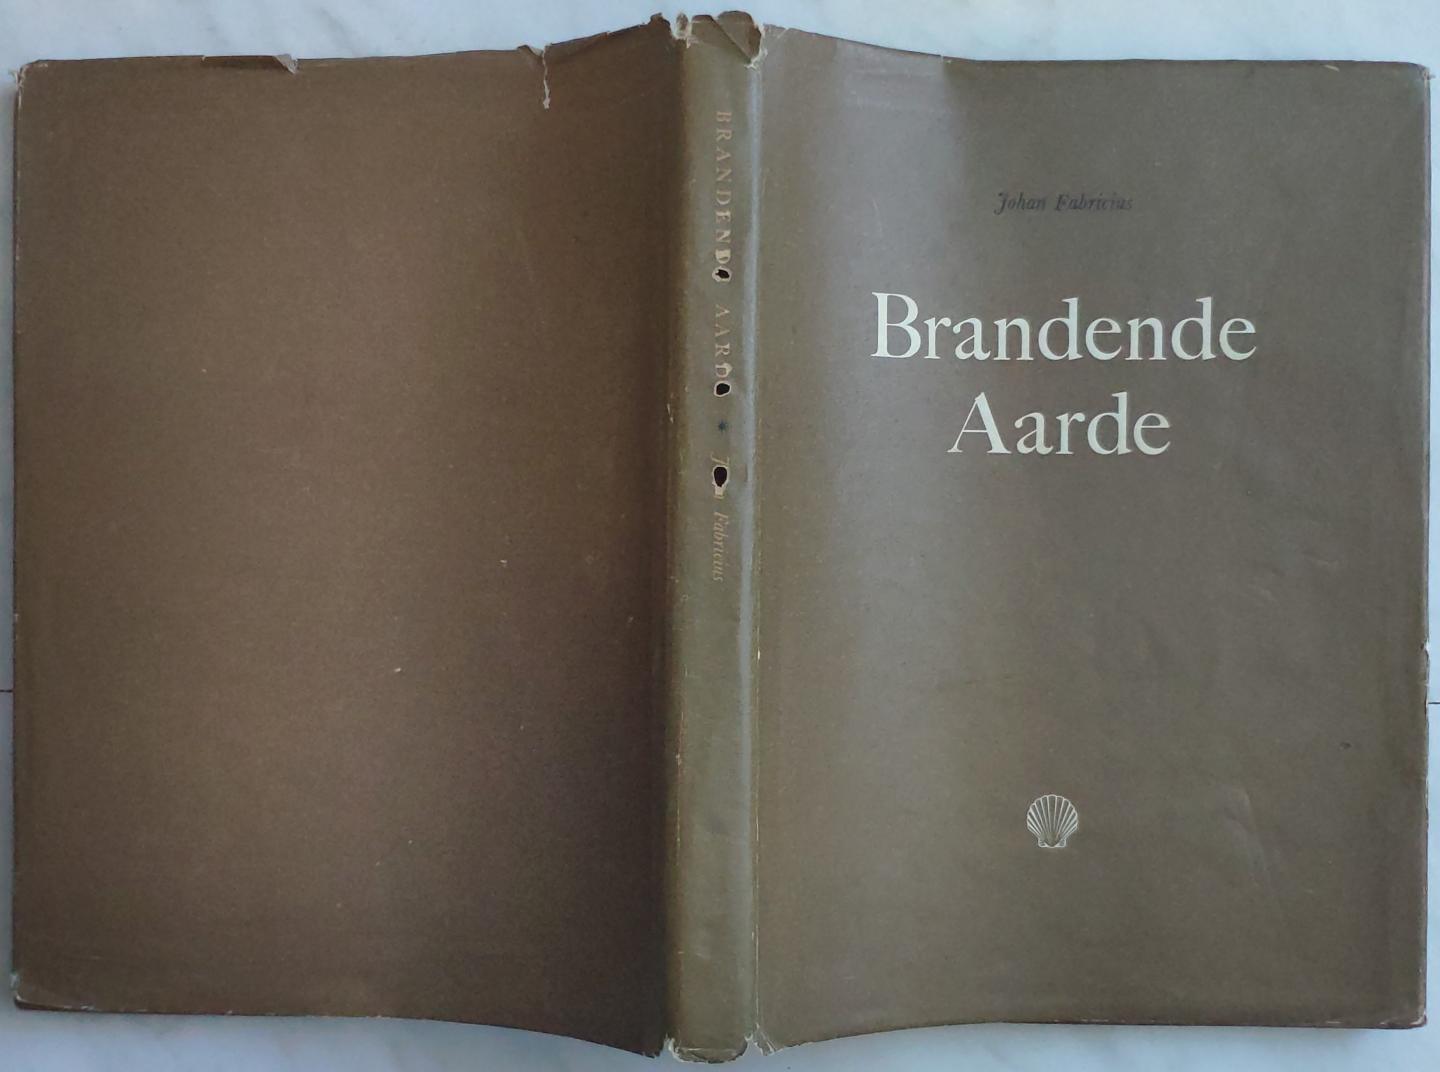 Johan Fabricius - Brandende Aarde (Fabricius 1949)